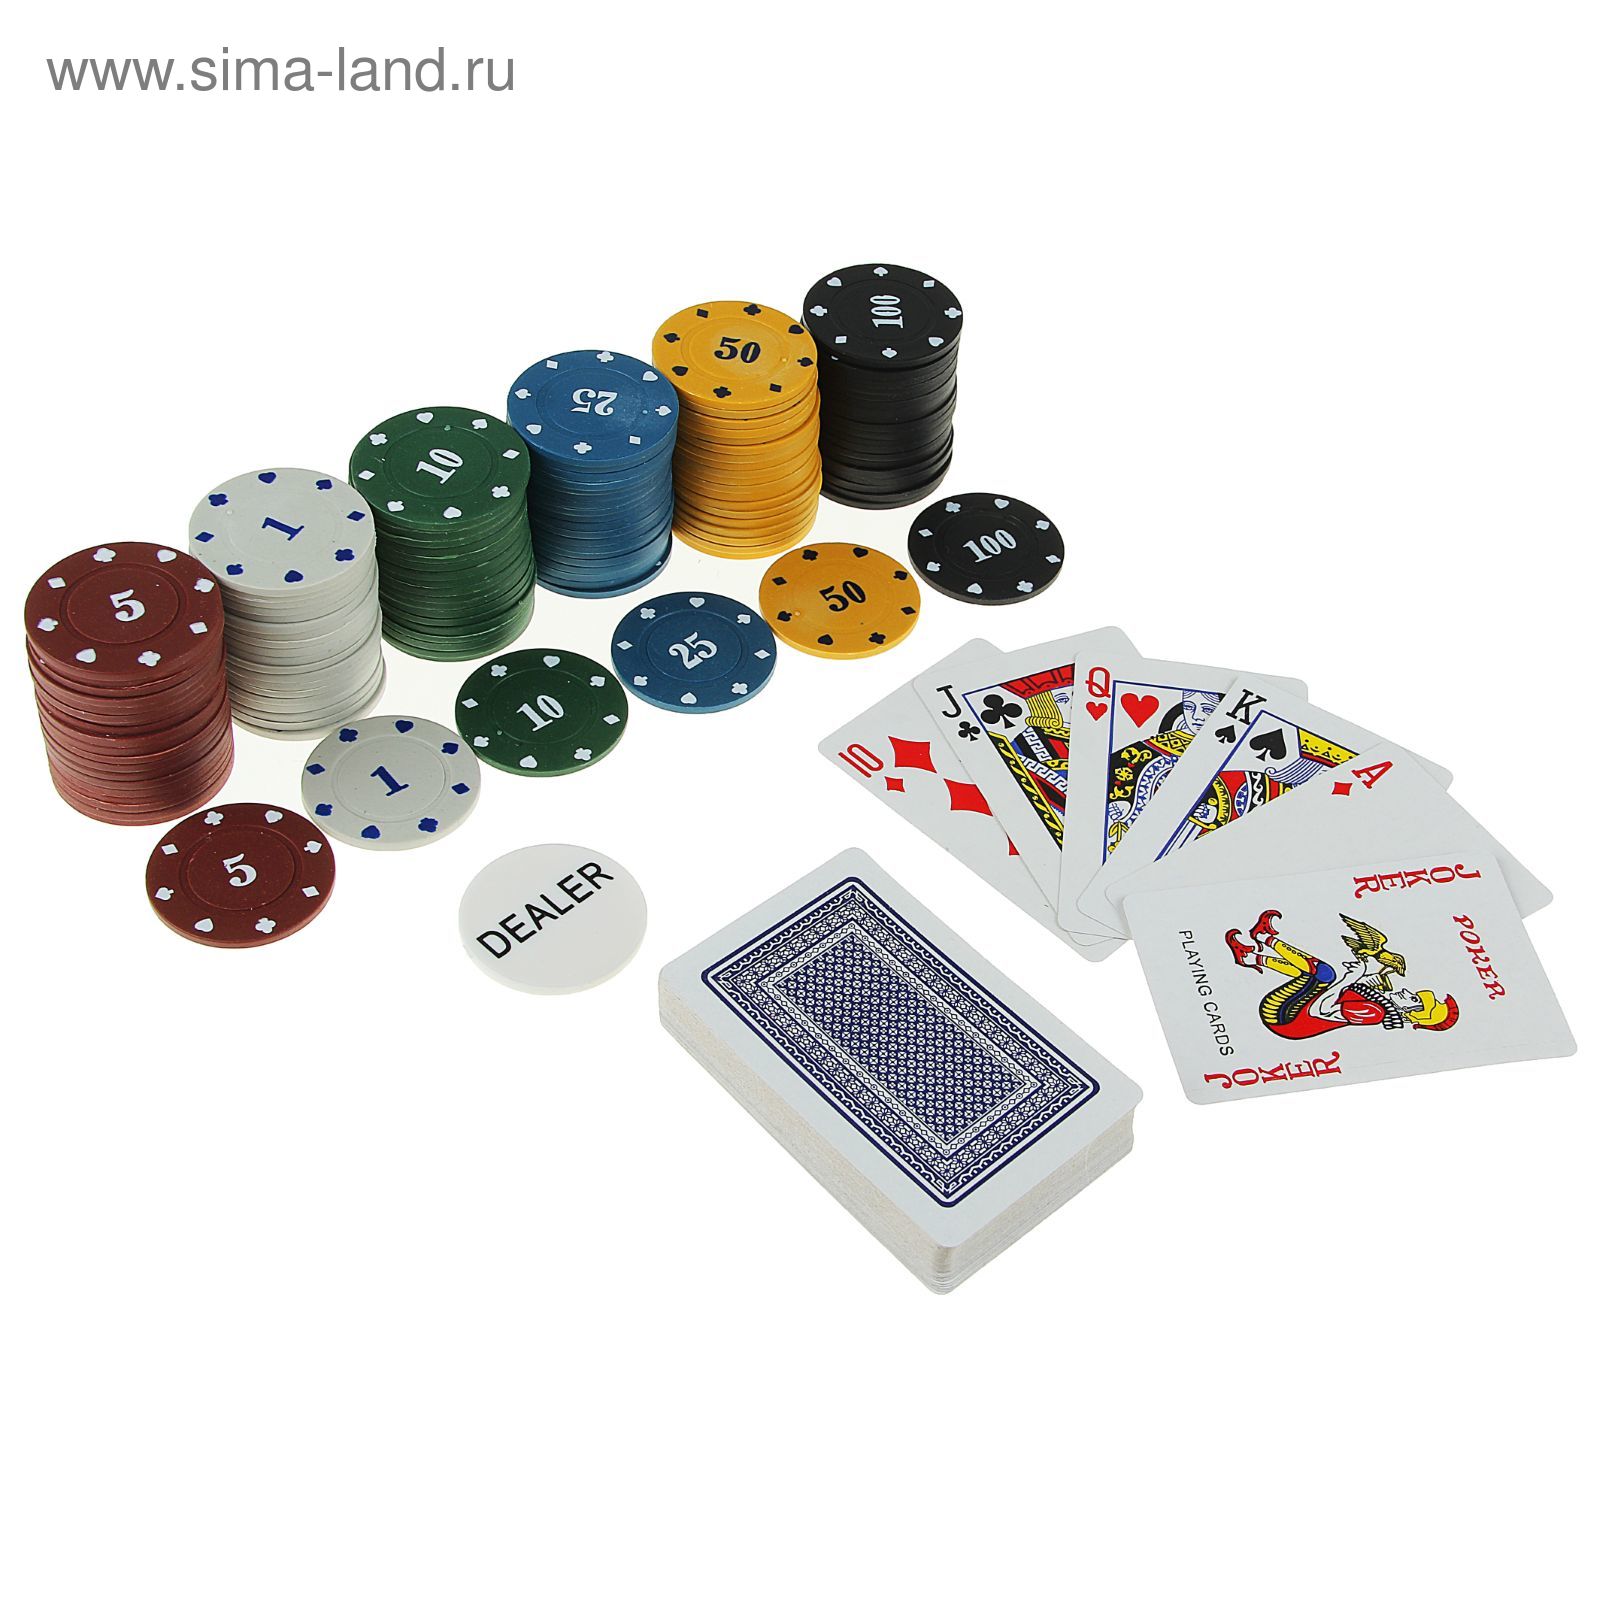 Набор для покера: 120 фишек, колода карт 54 шт., металлическая коробка